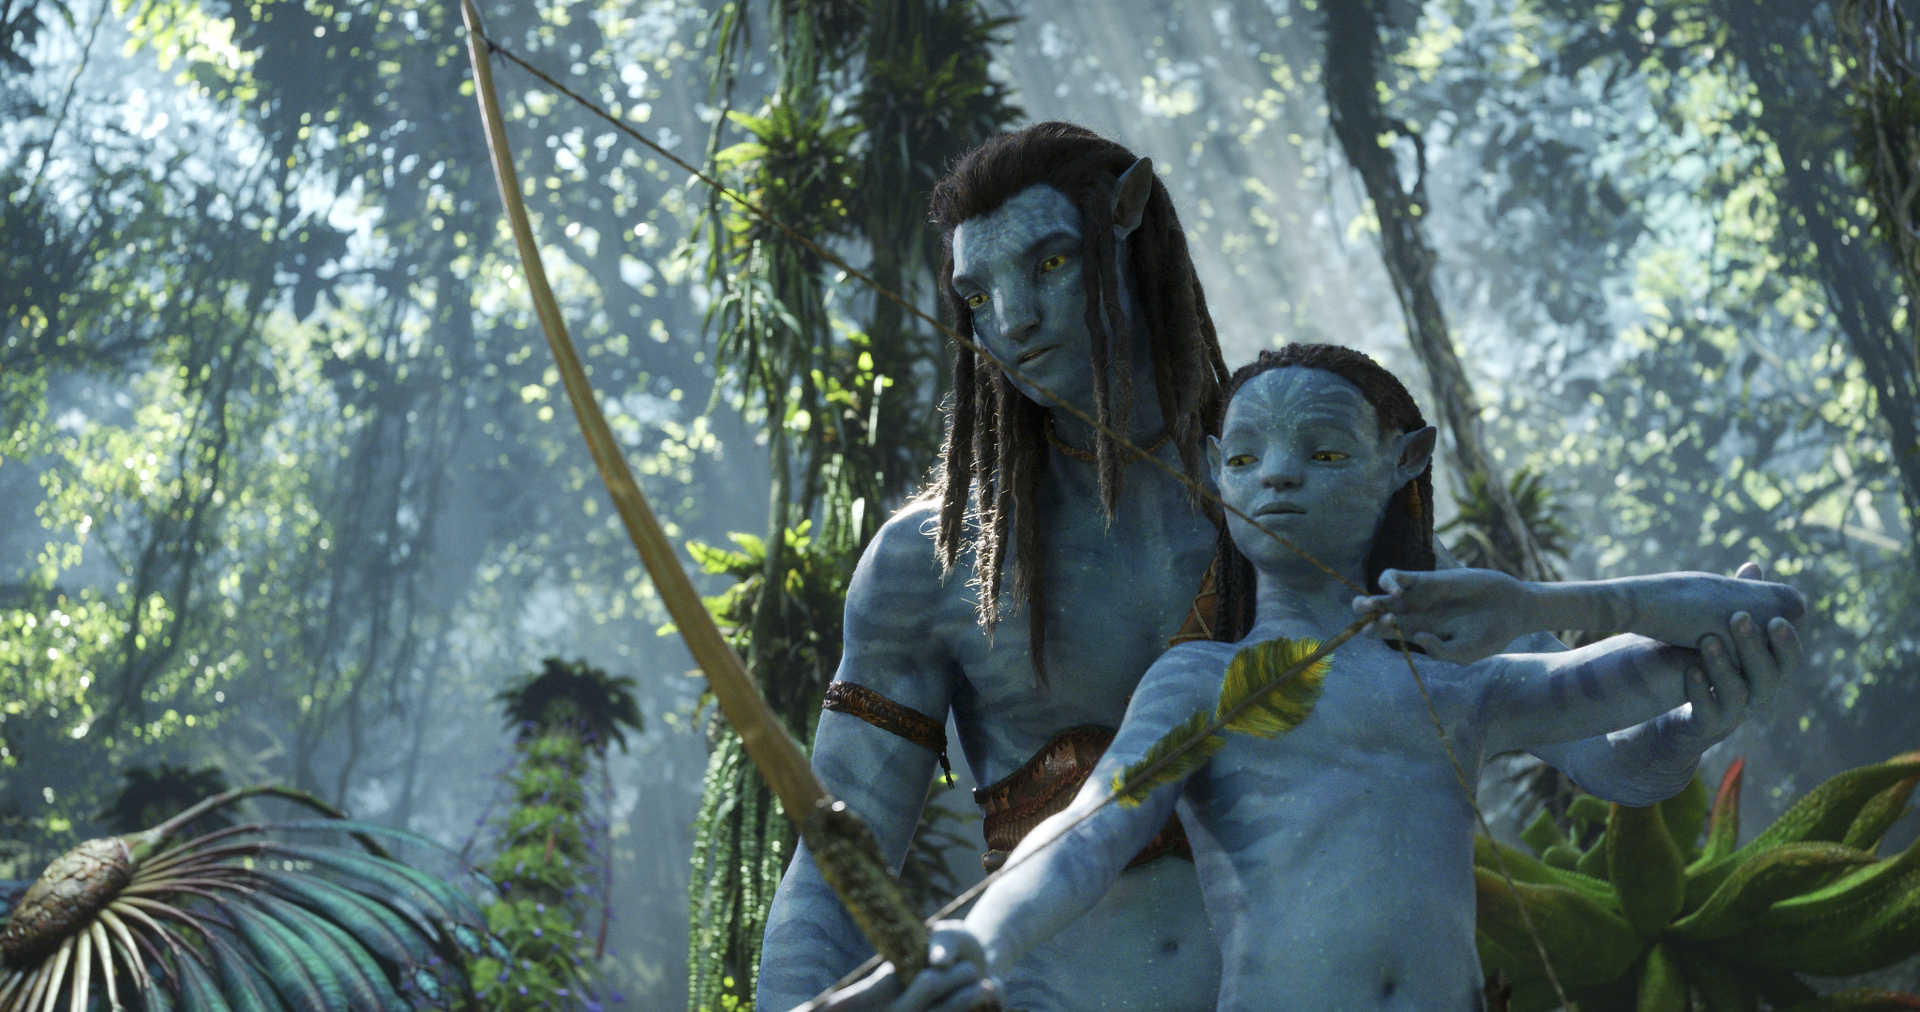 'Avatar: Dòng chảy của nước' đạt doanh thu 40 tỷ chỉ sau 1 ngày công chiếu, hứa hẹn vượt xa phần 1 - ảnh 4